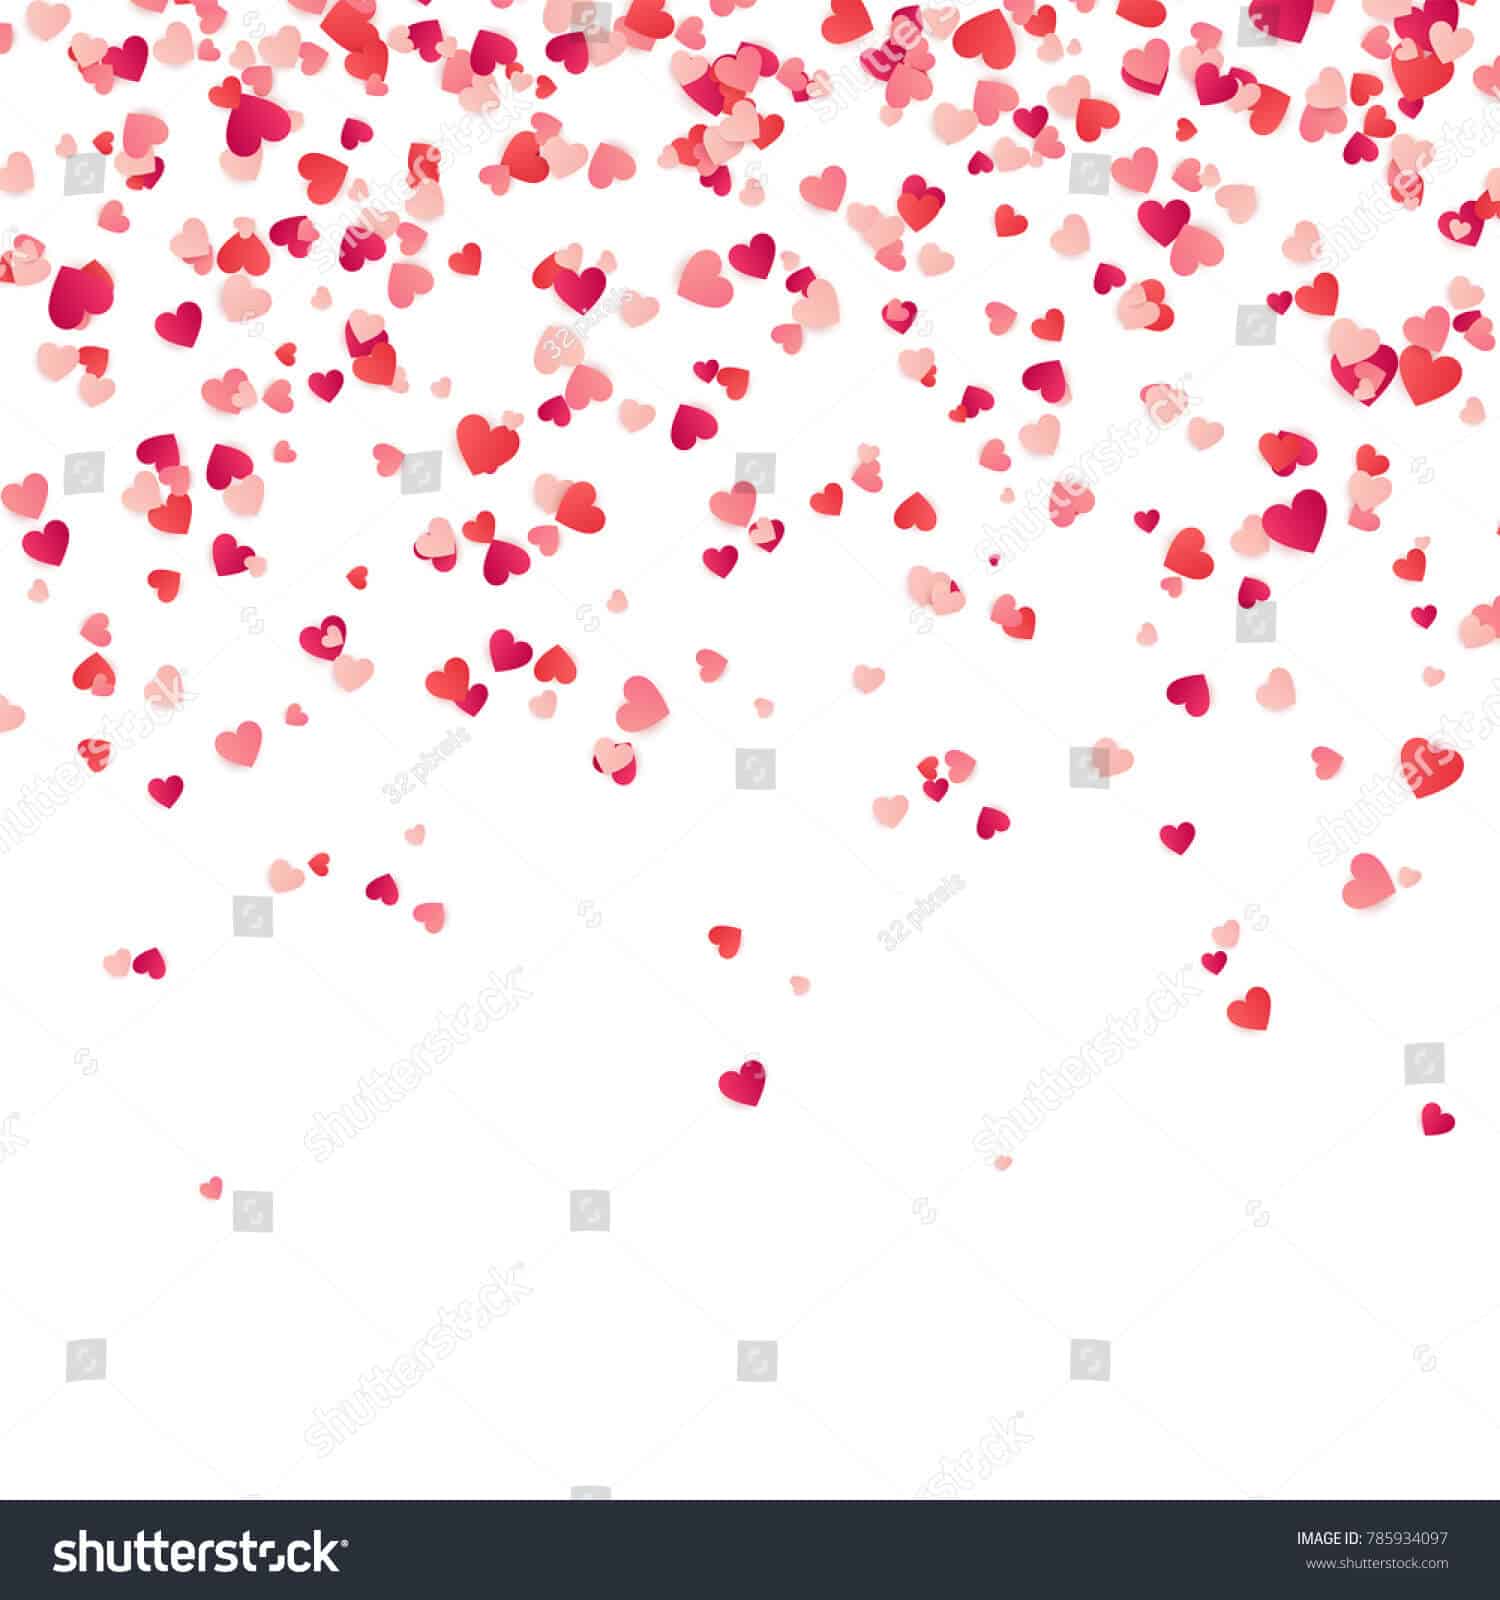 600 ngàn hình ảnh nền trái tim valentine tuyệt đẹp chất lượng cao